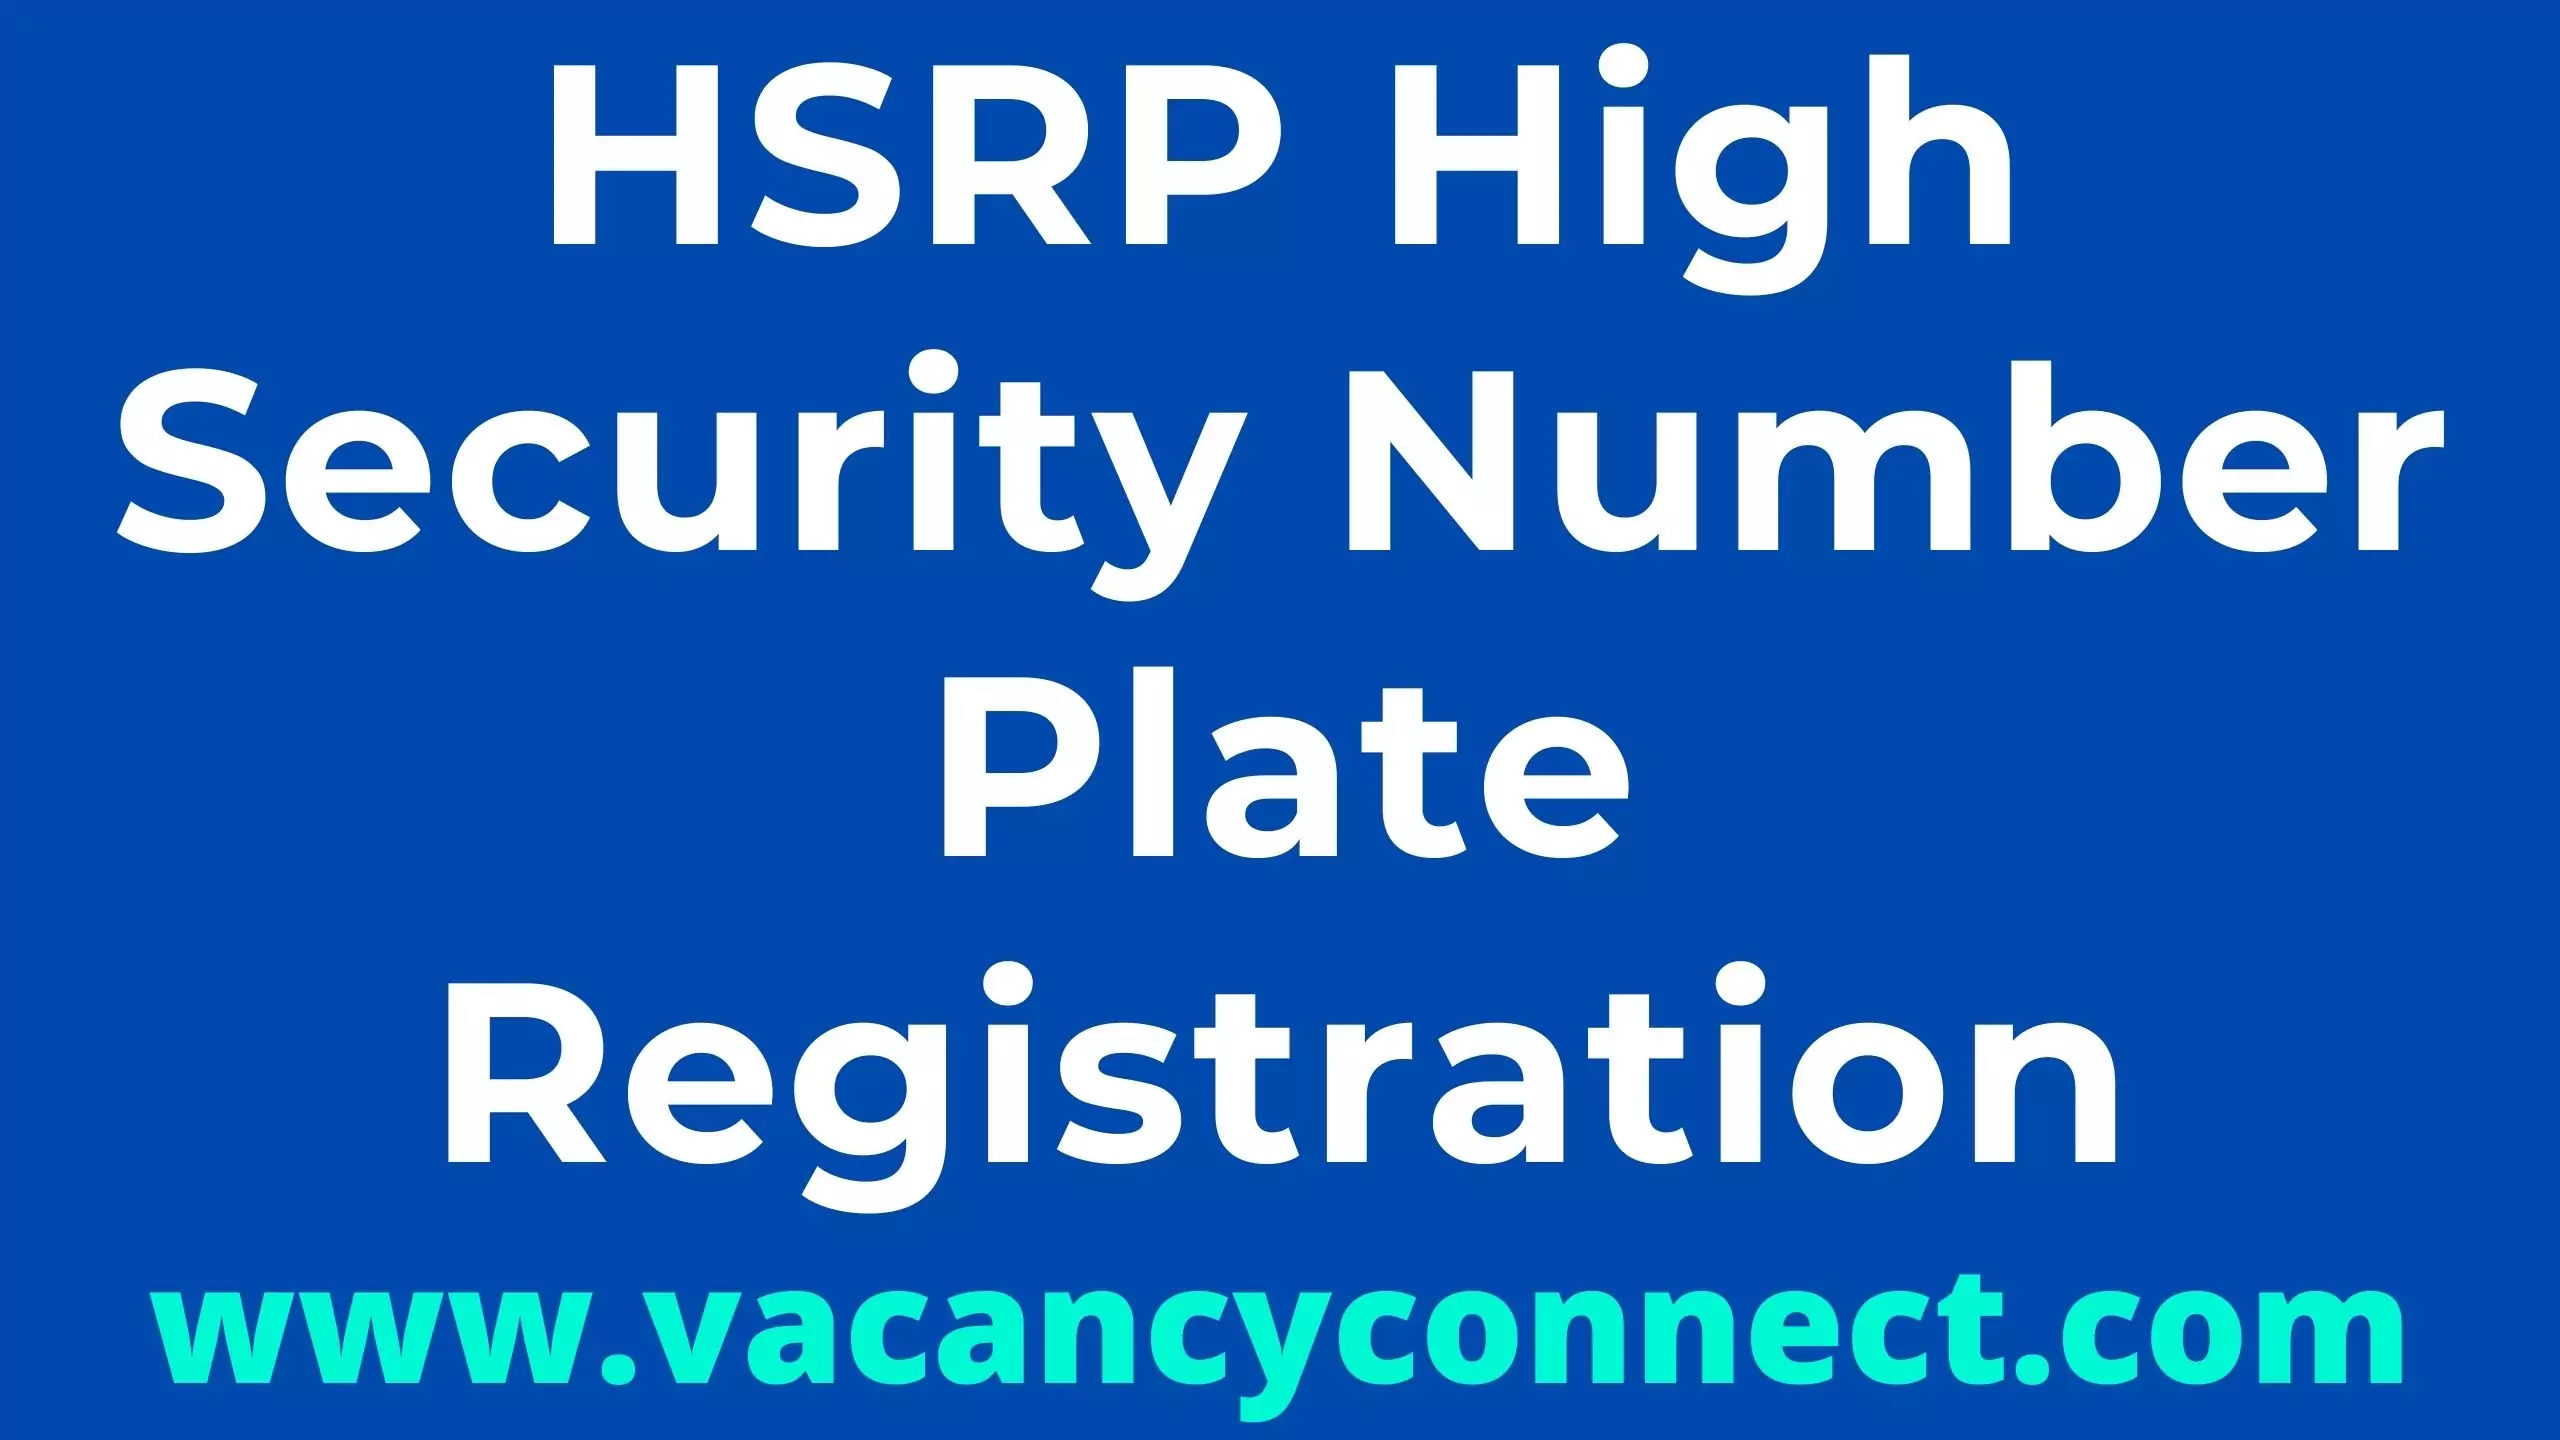 HSRP High Security Number Plate Registration